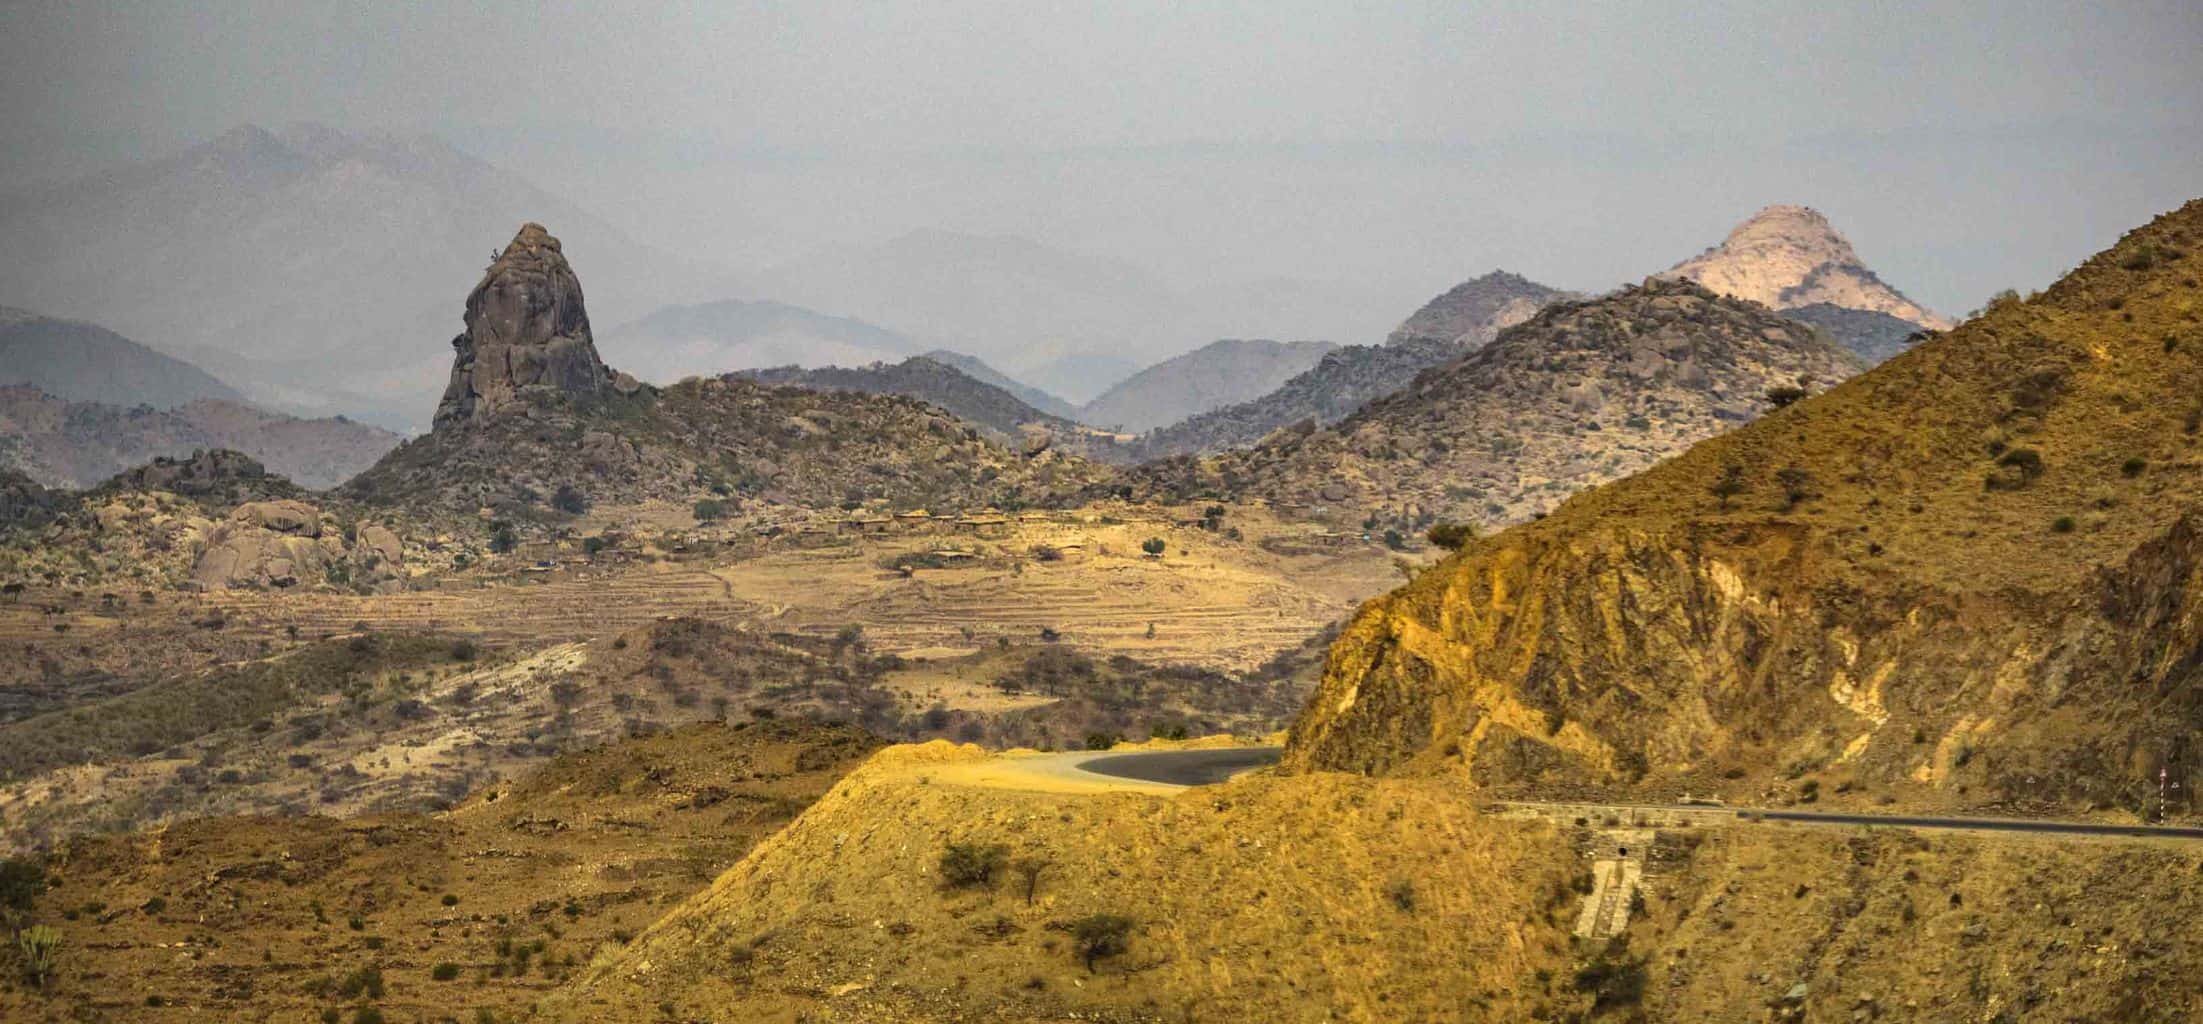 Scenery when heading west in Eritrea east africa